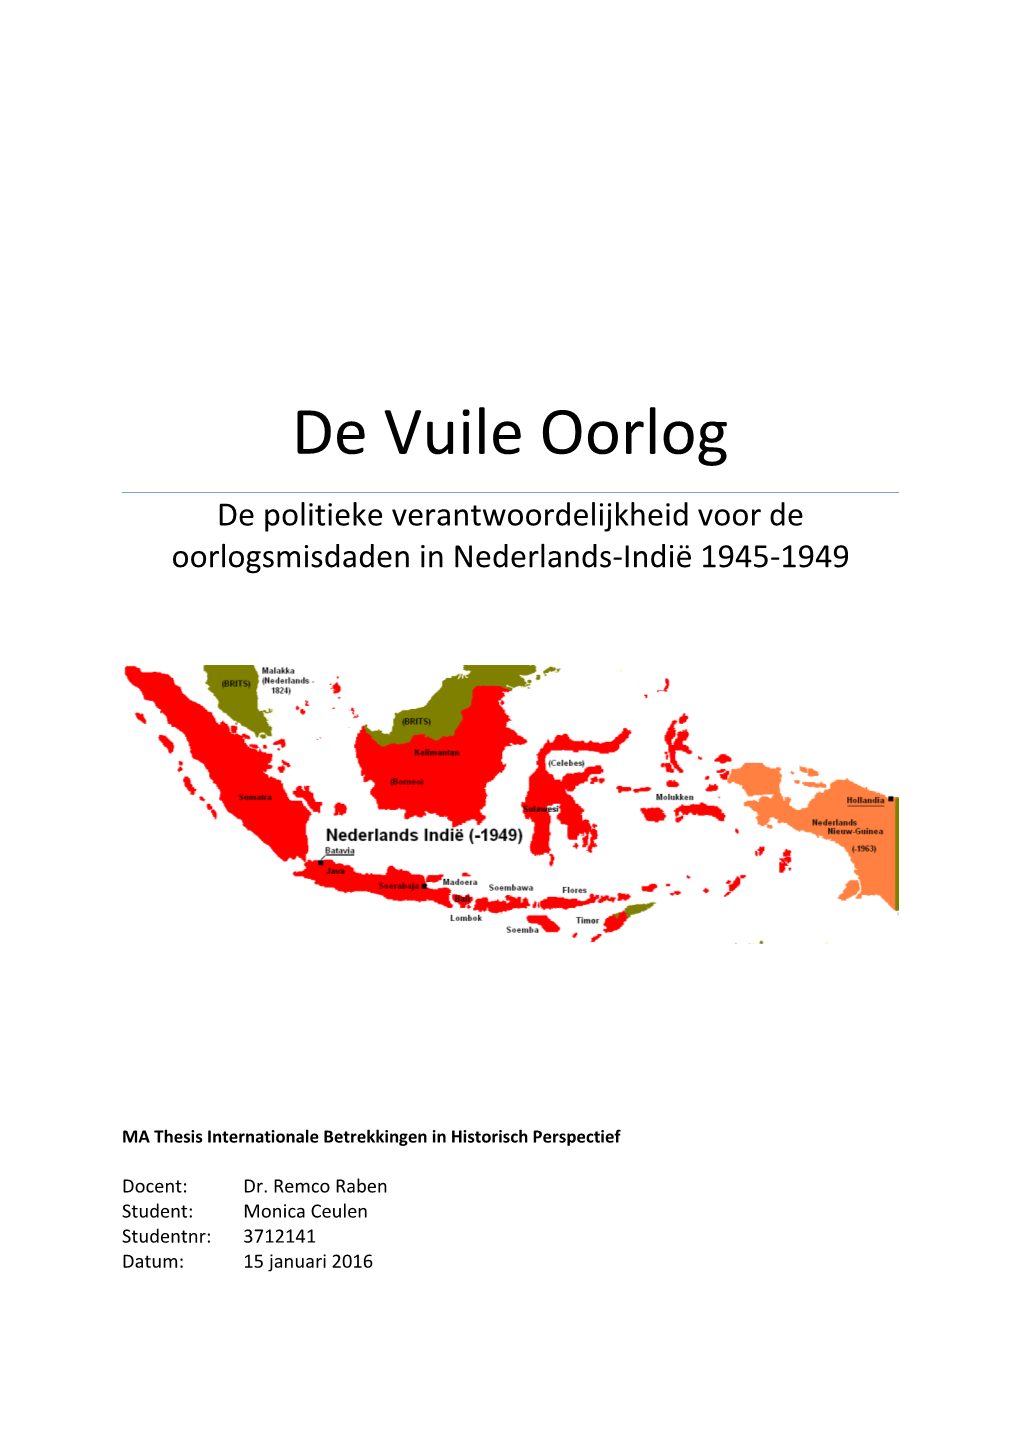 De Vuile Oorlog De Politieke Verantwoordelijkheid Voor De Oorlogsmisdaden in Nederlands-Indië 1945-1949